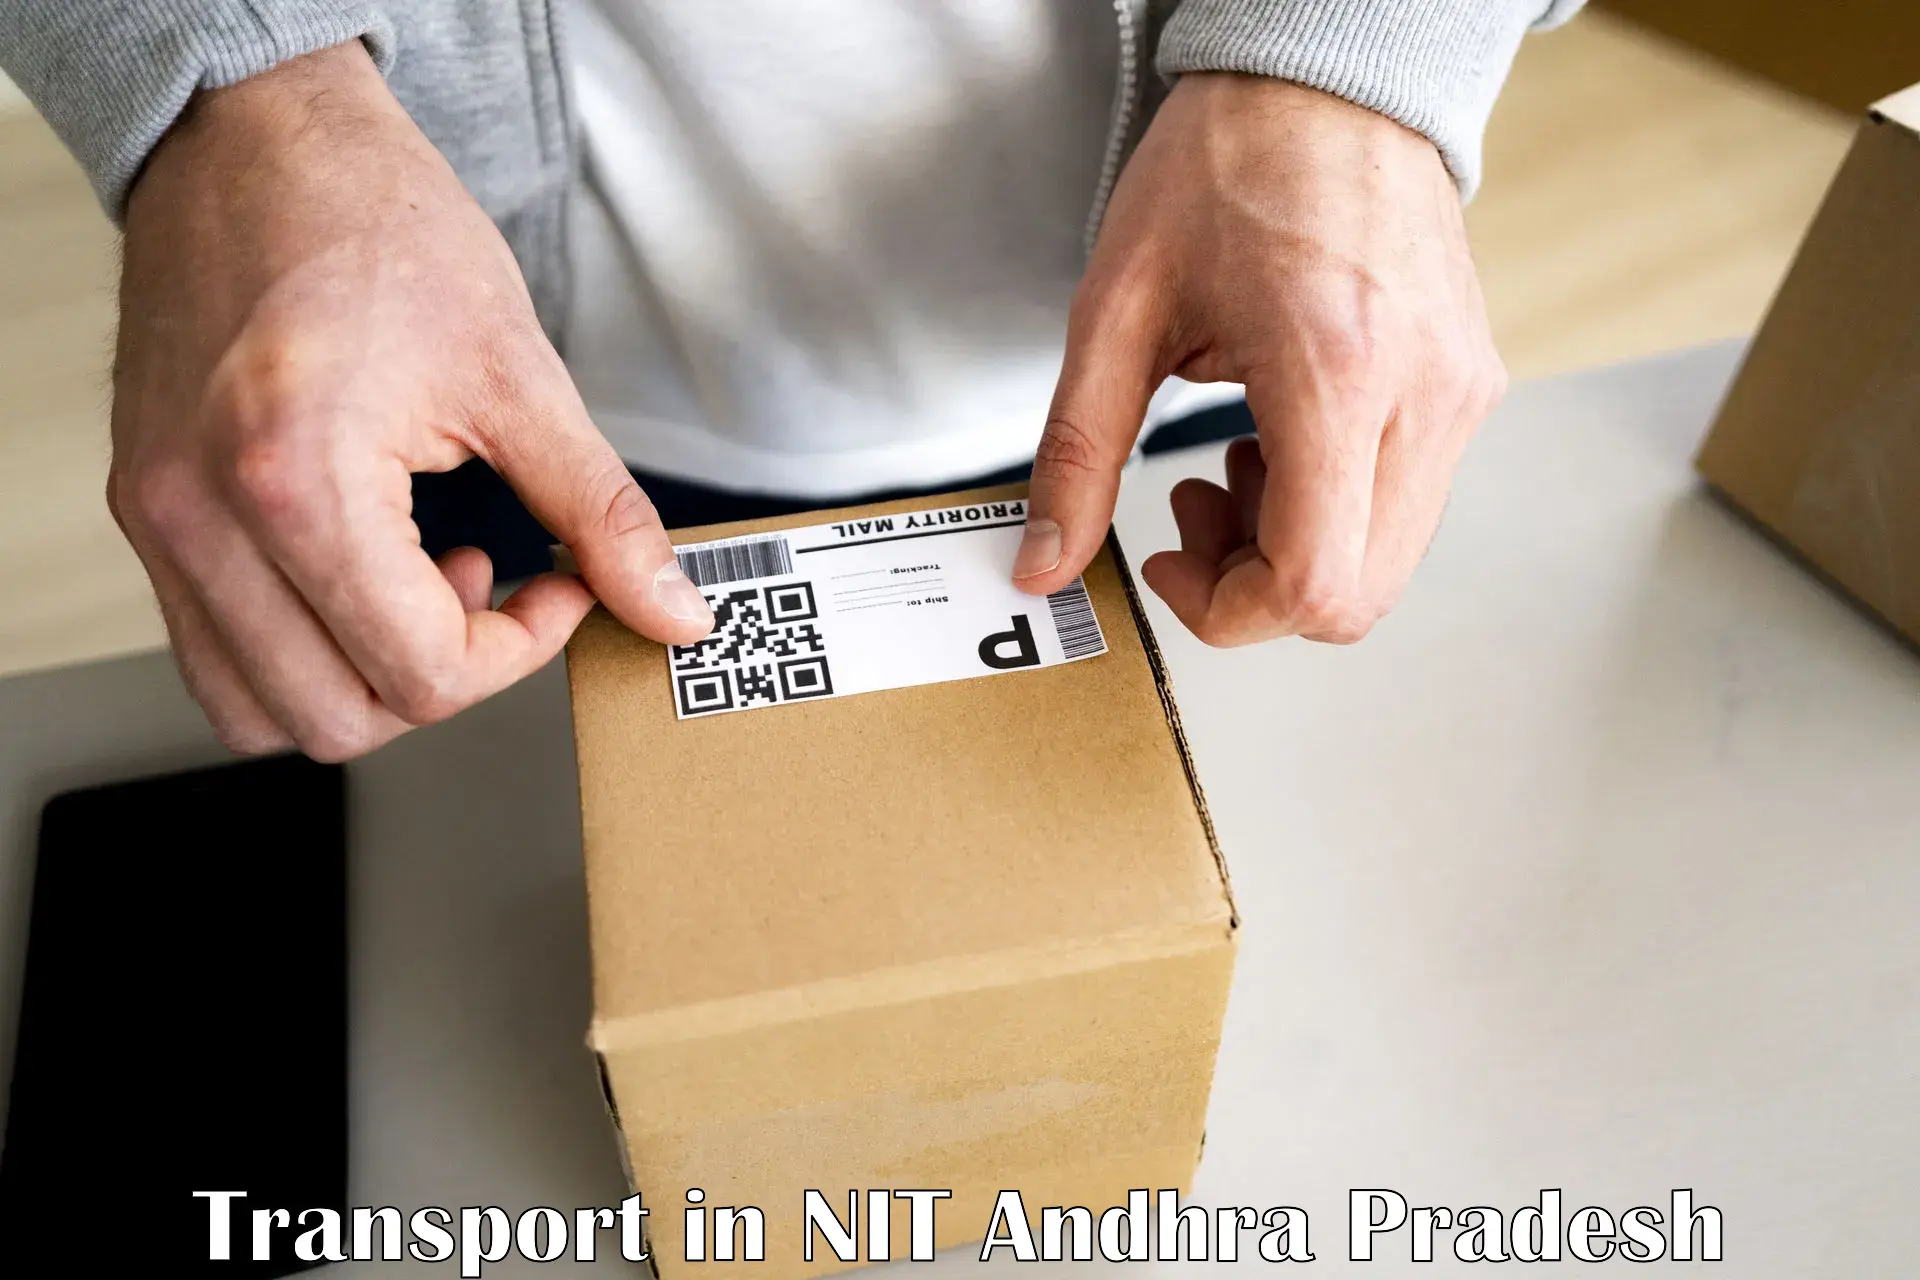 Parcel transport services in NIT Andhra Pradesh